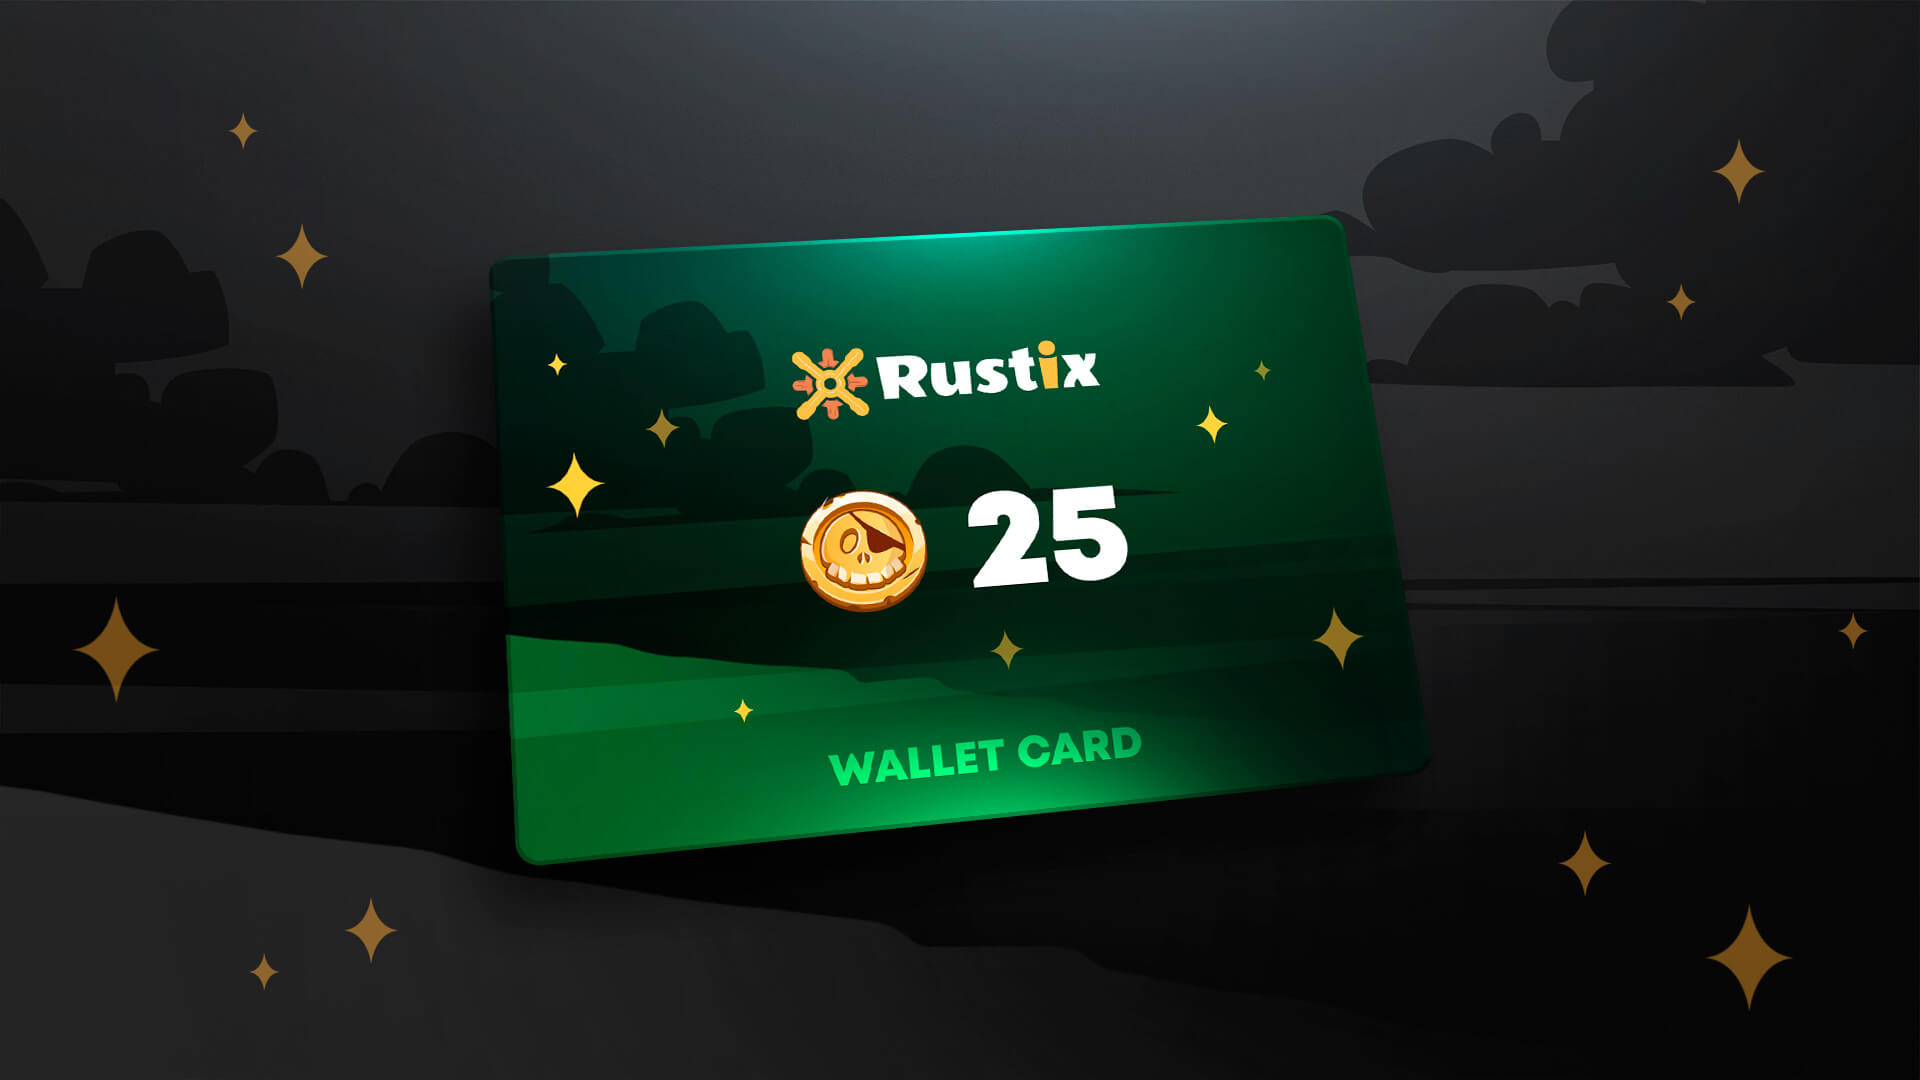 Rustix.io 25 USD Wallet Card Code 28.25 usd